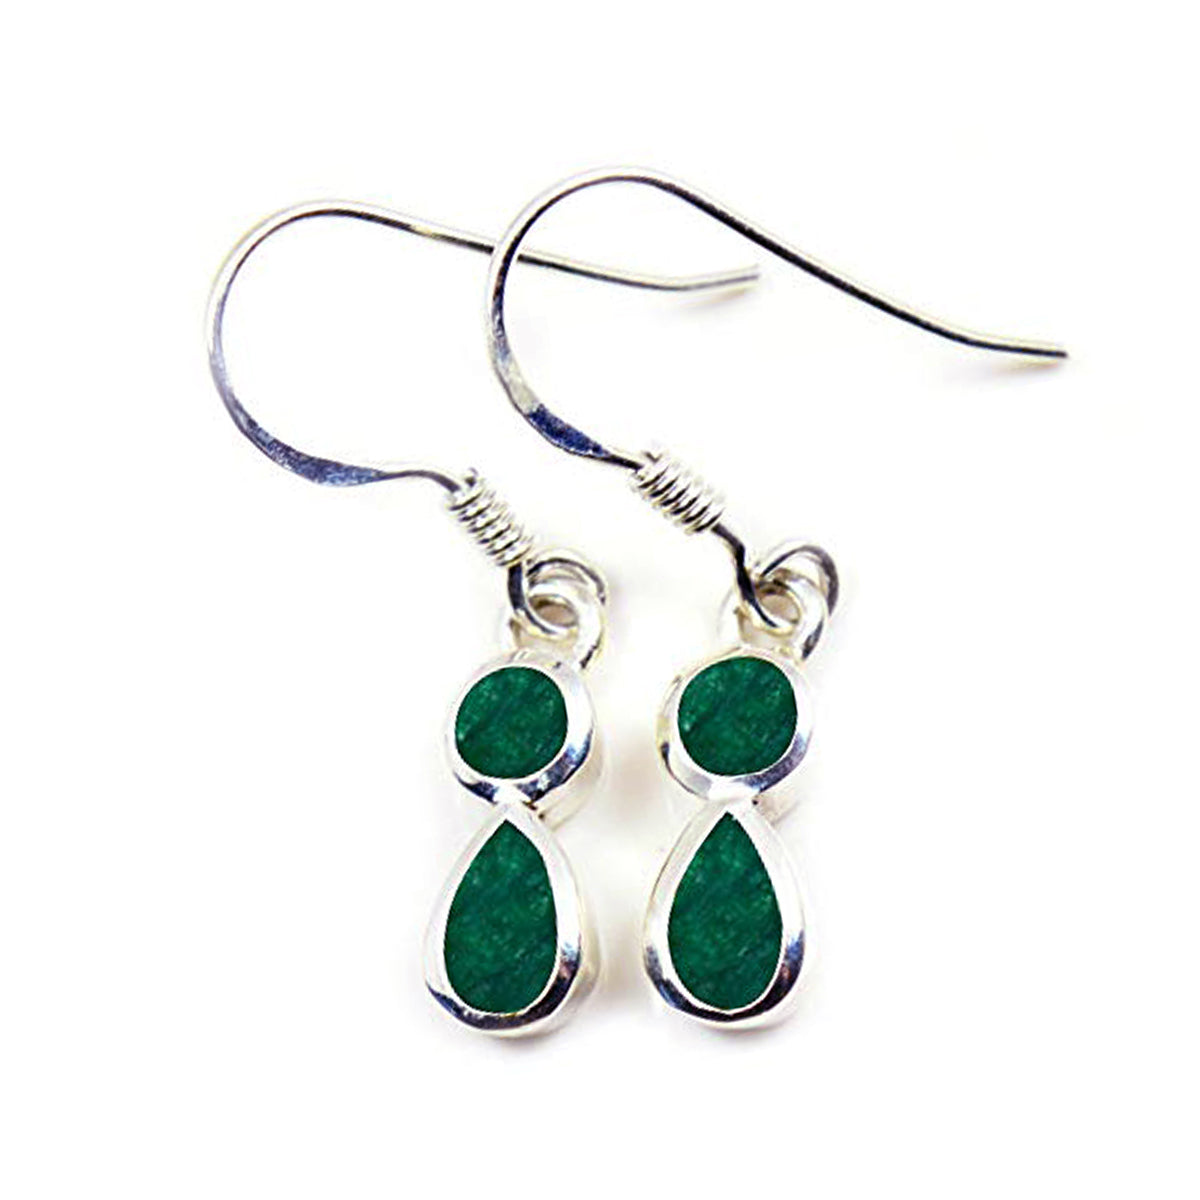 riyo tilltalande sterling silver örhänge för dam indisk smaragd örhänge bezel inställning grönt örhänge dingla örhänge